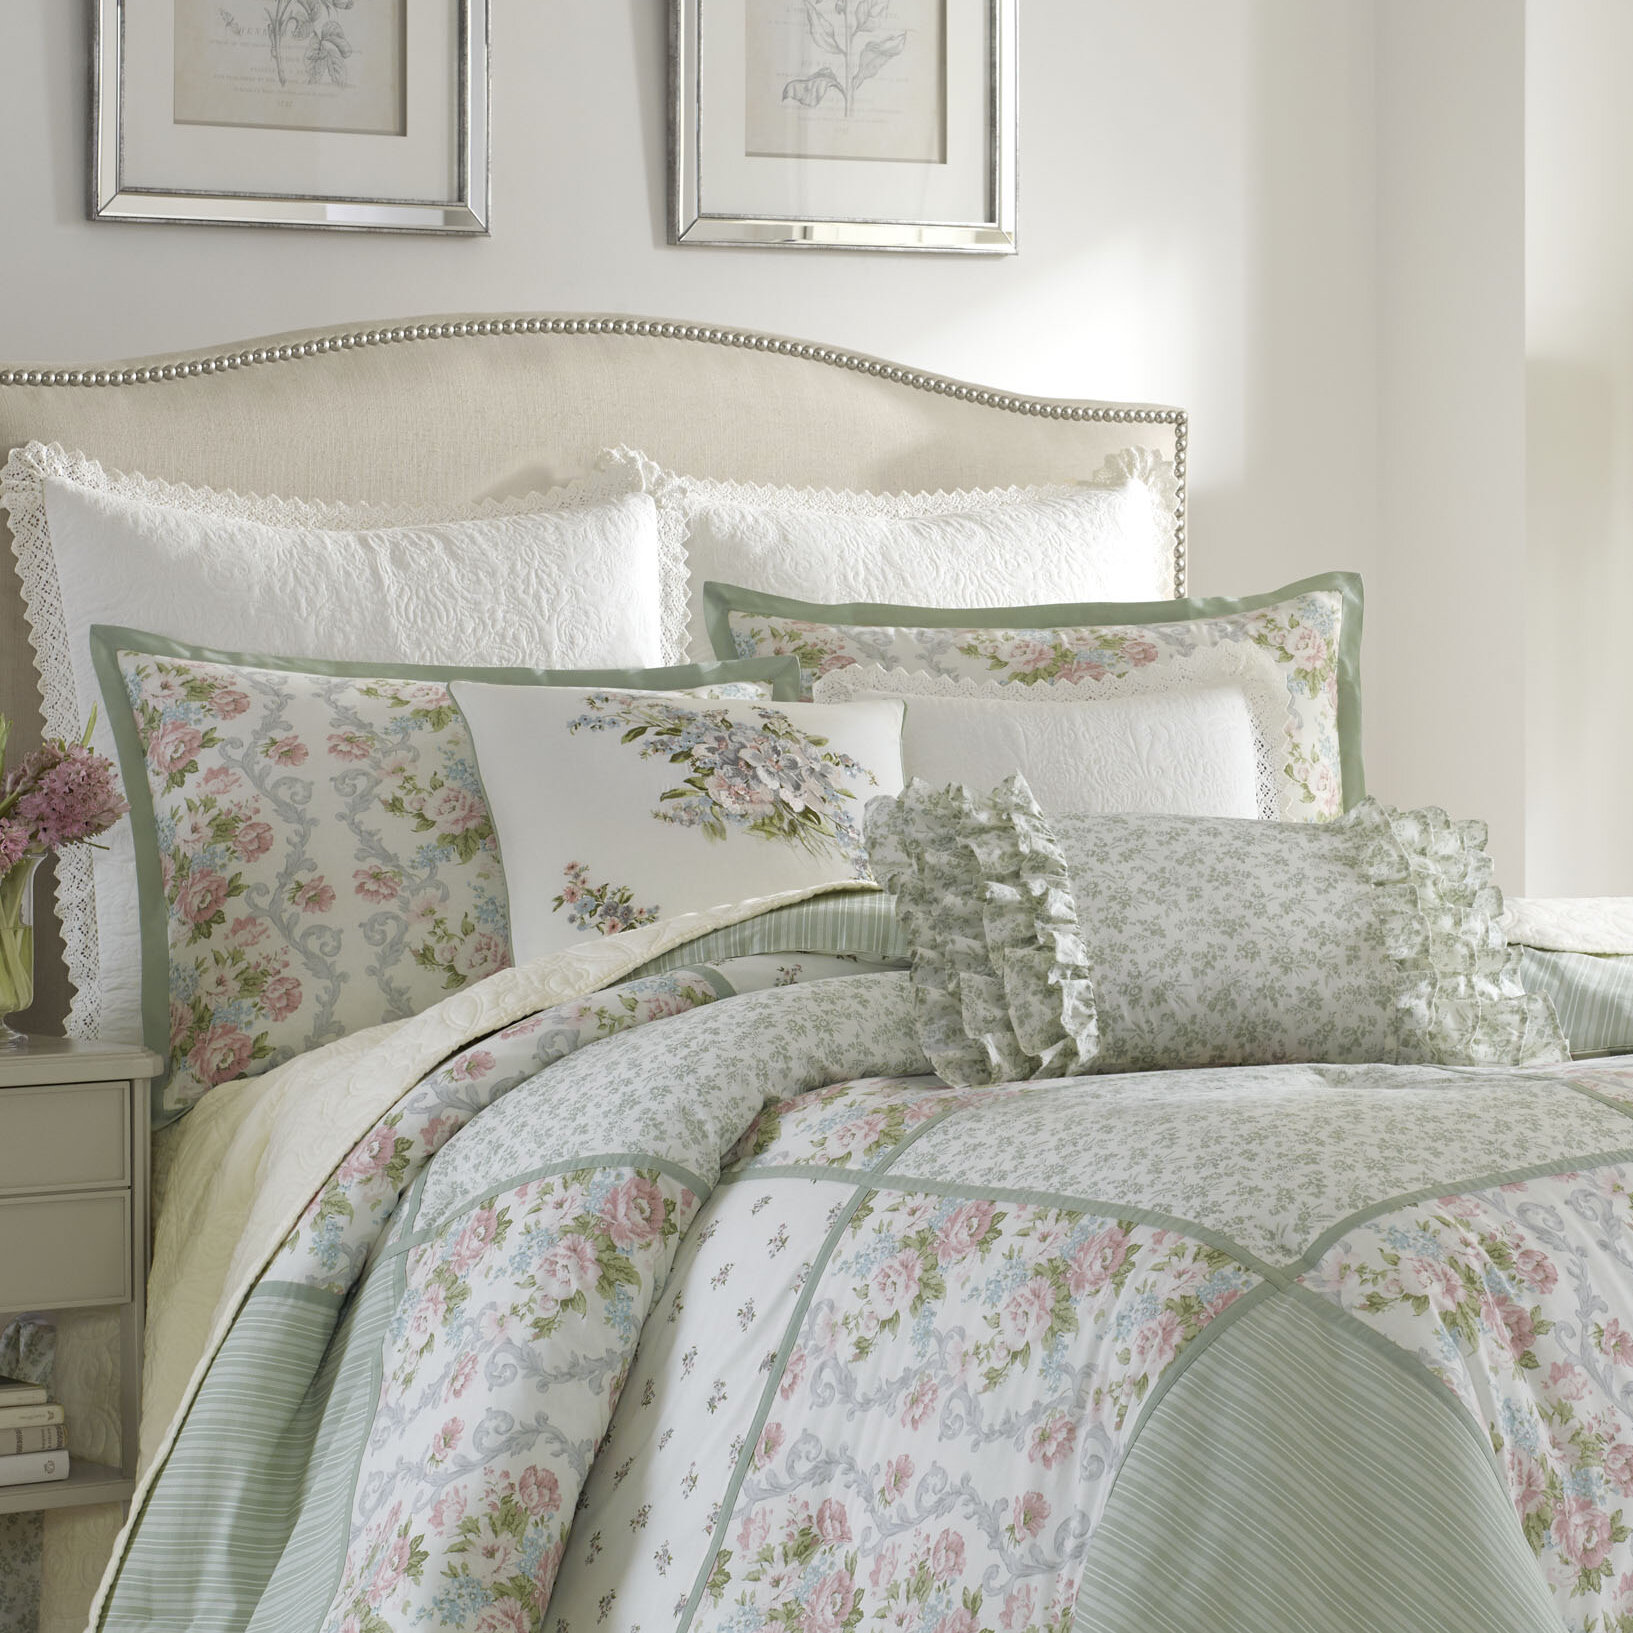 https://assets.wfcdn.com/im/07824527/compr-r85/3936/39369524/harper-green-floral-patchwork-100-cotton-reversible-comforter-set.jpg